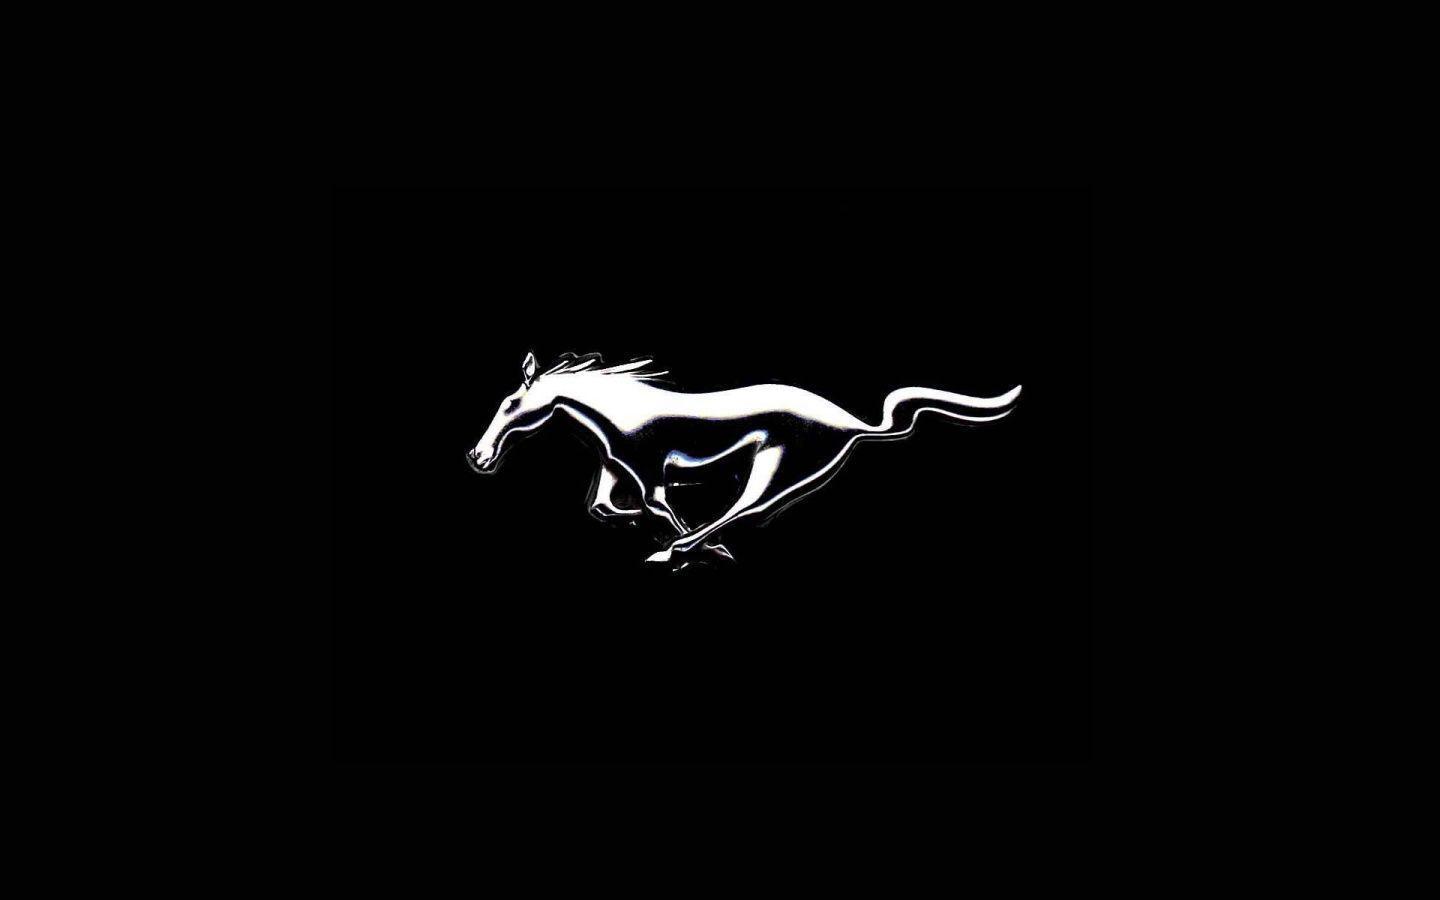 Logo Wallpaper: Mustang Logo Wallpaper HD. .Ssofc